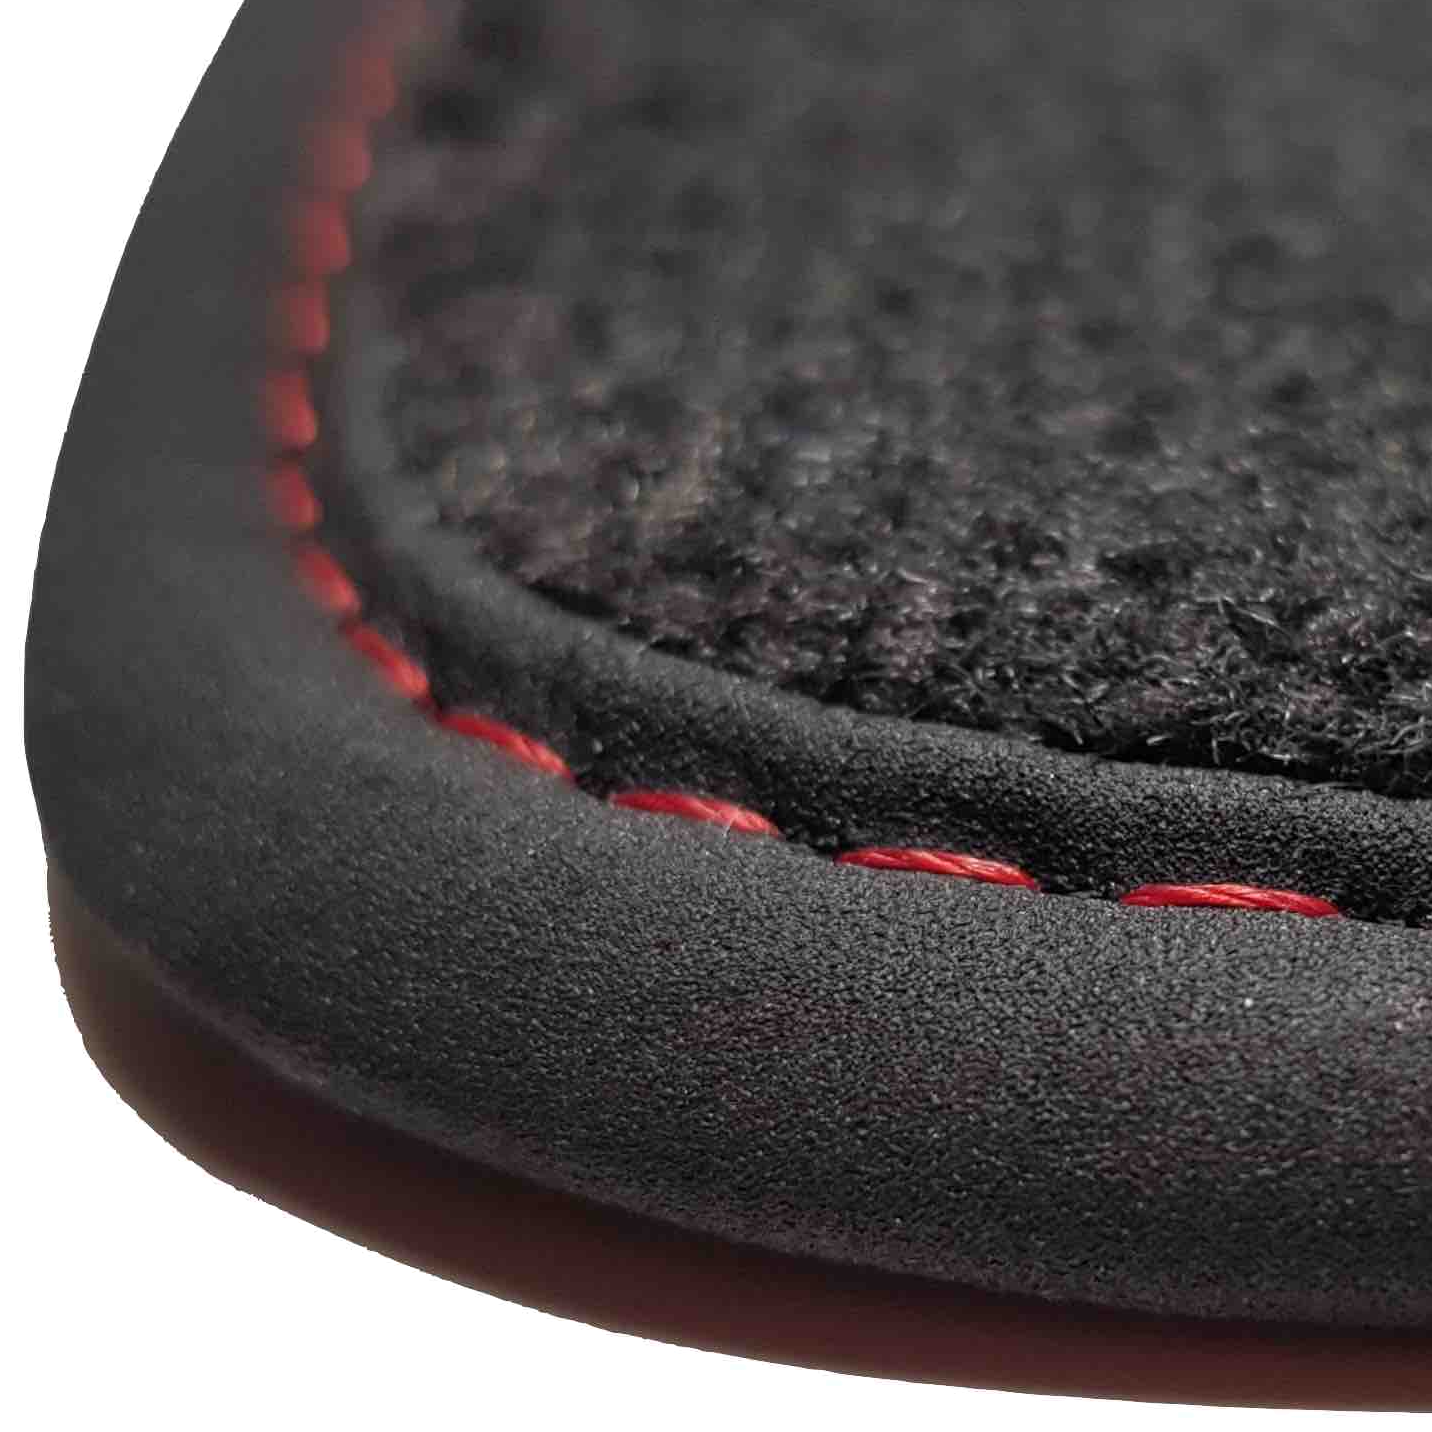 tapis auto Familiale origine Renault prix discount livraison gratuite moquette noir bordure rouge